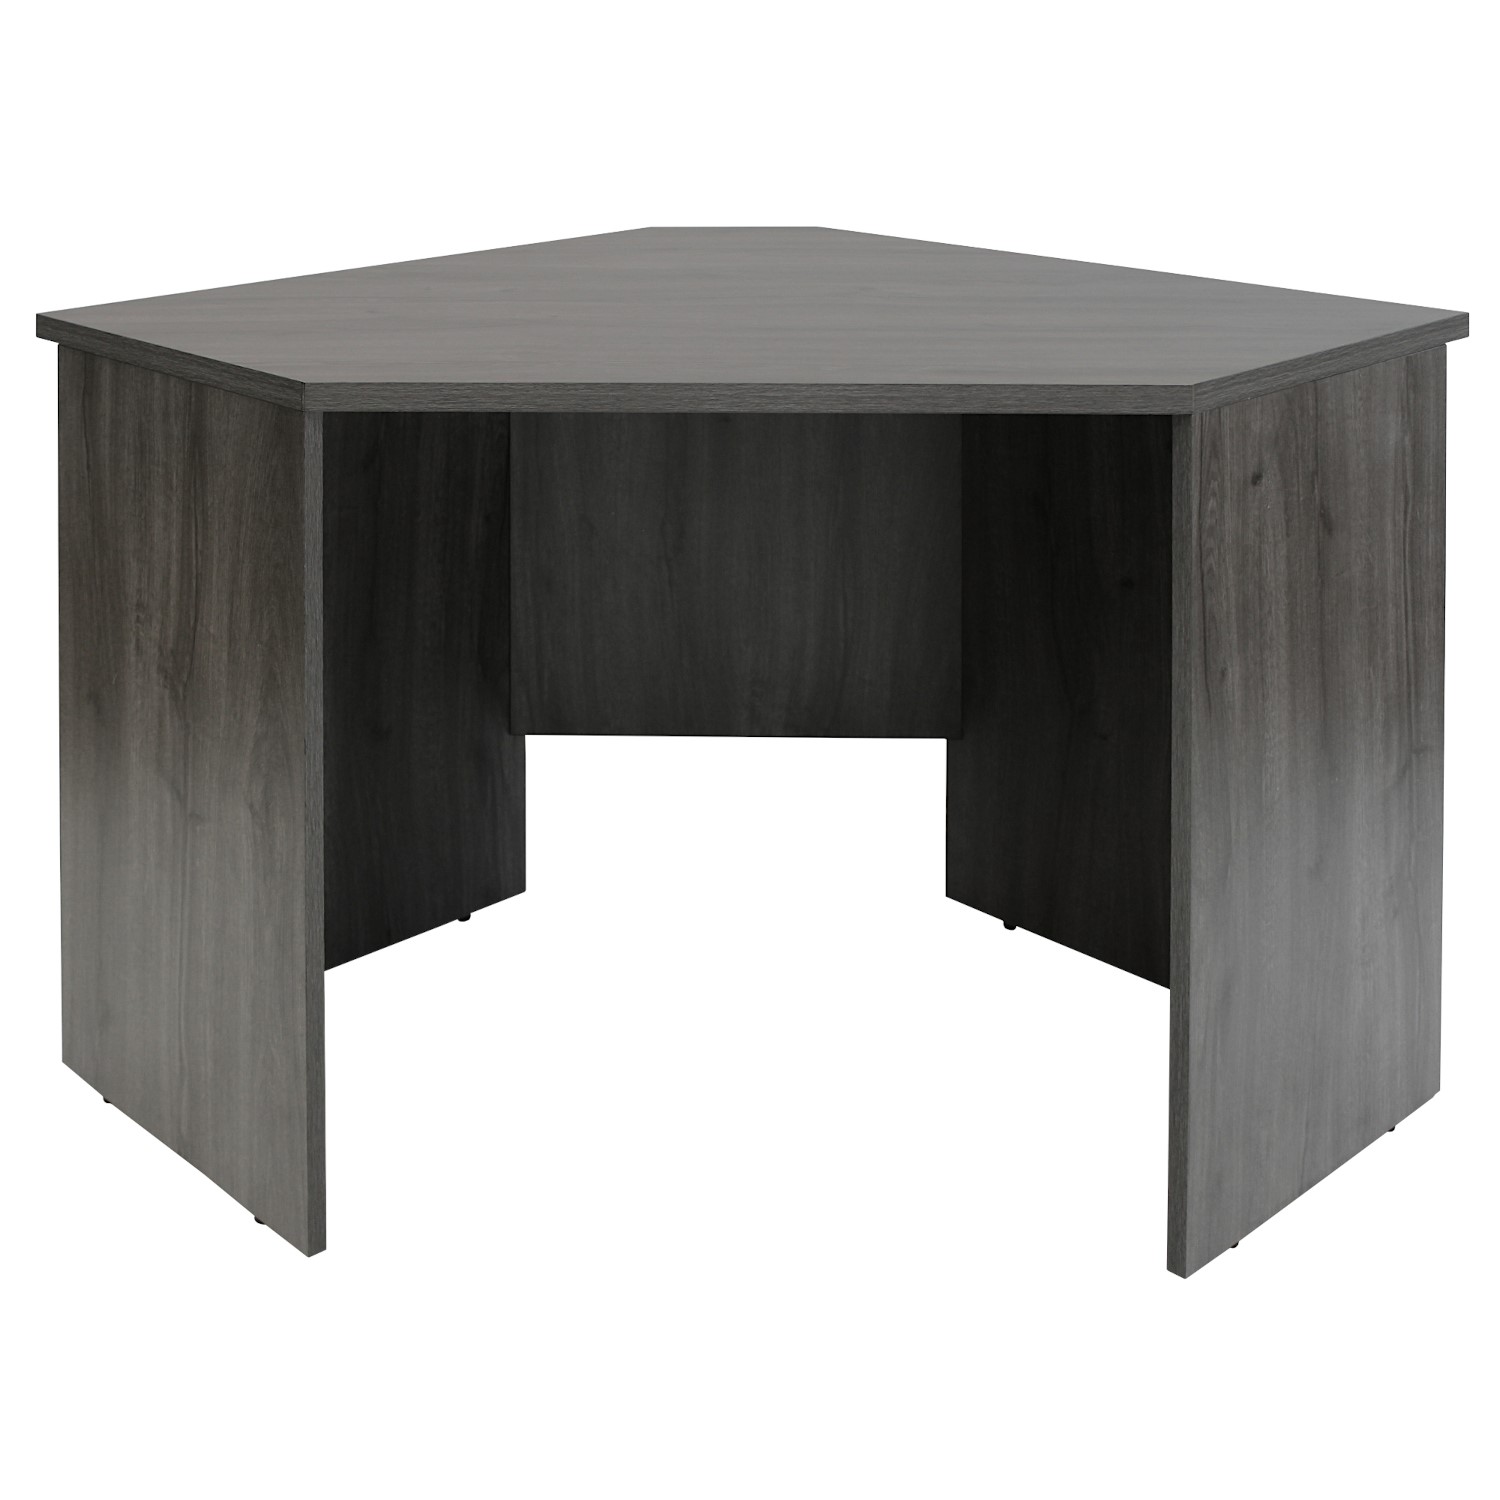 Read more about Dark grey washed oak corner desk denver